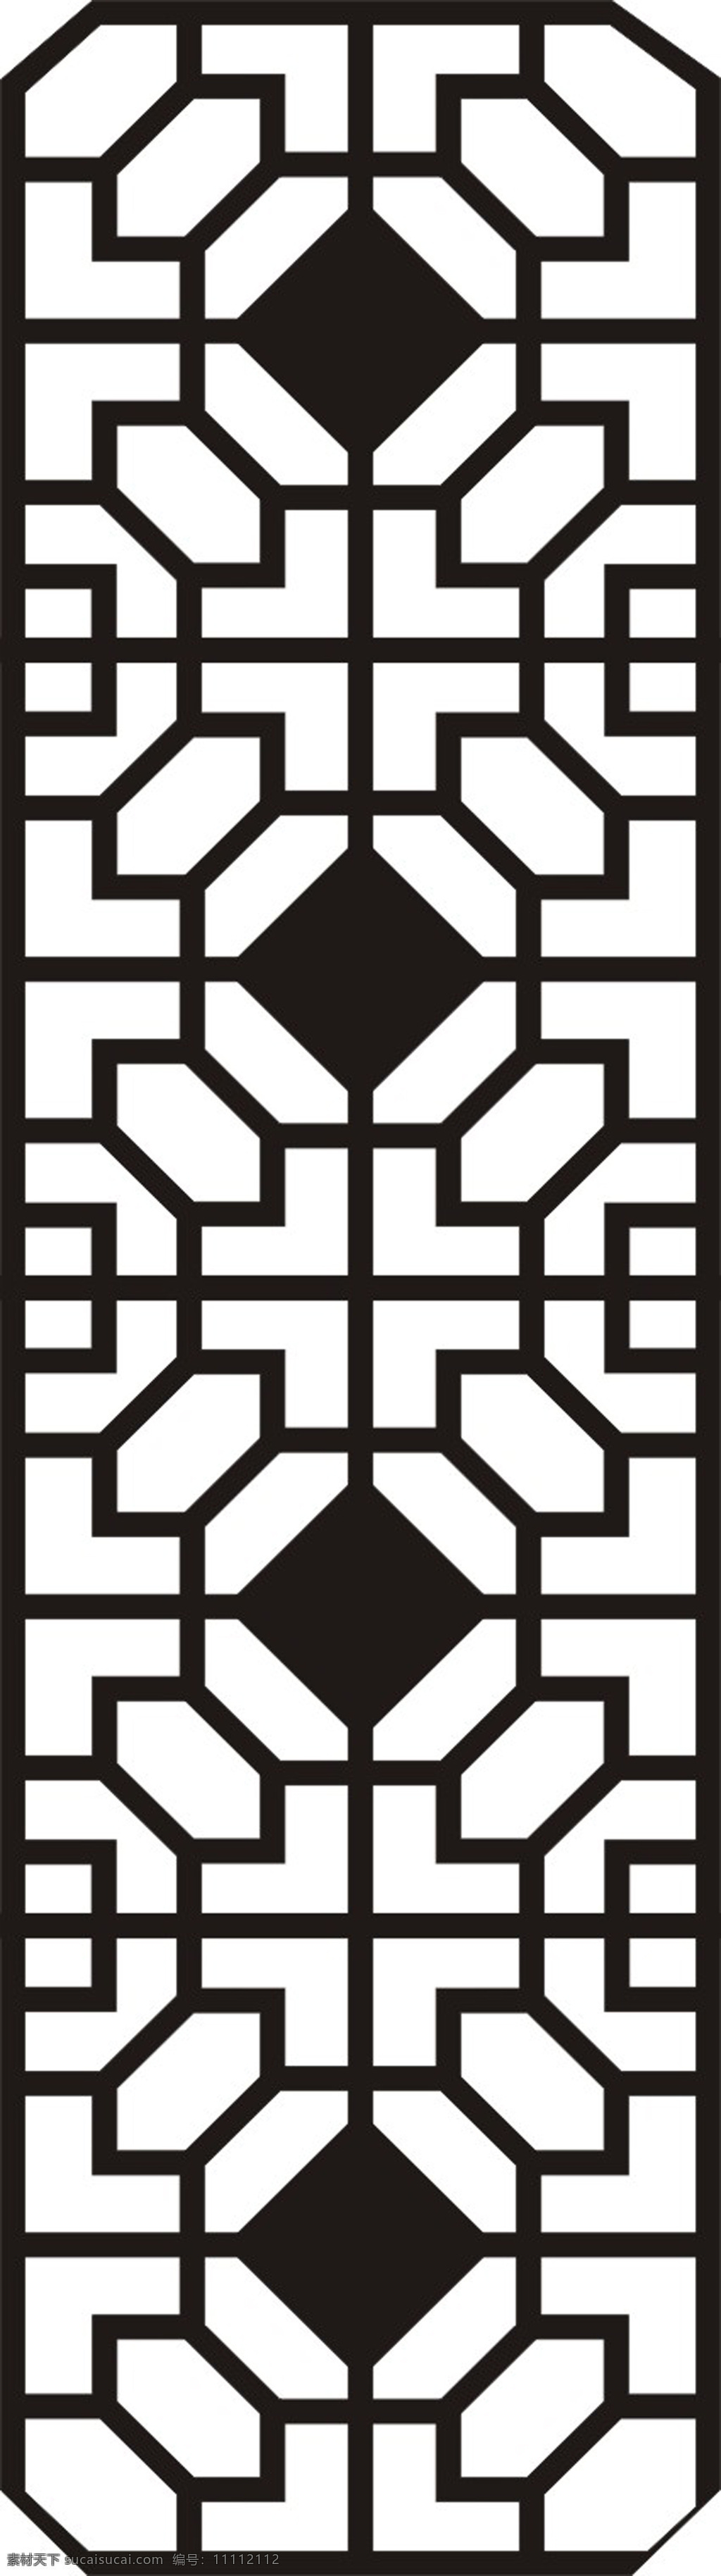 镂空花纹 黑白 镂空 花格 中式 现代 传统文化 文化艺术